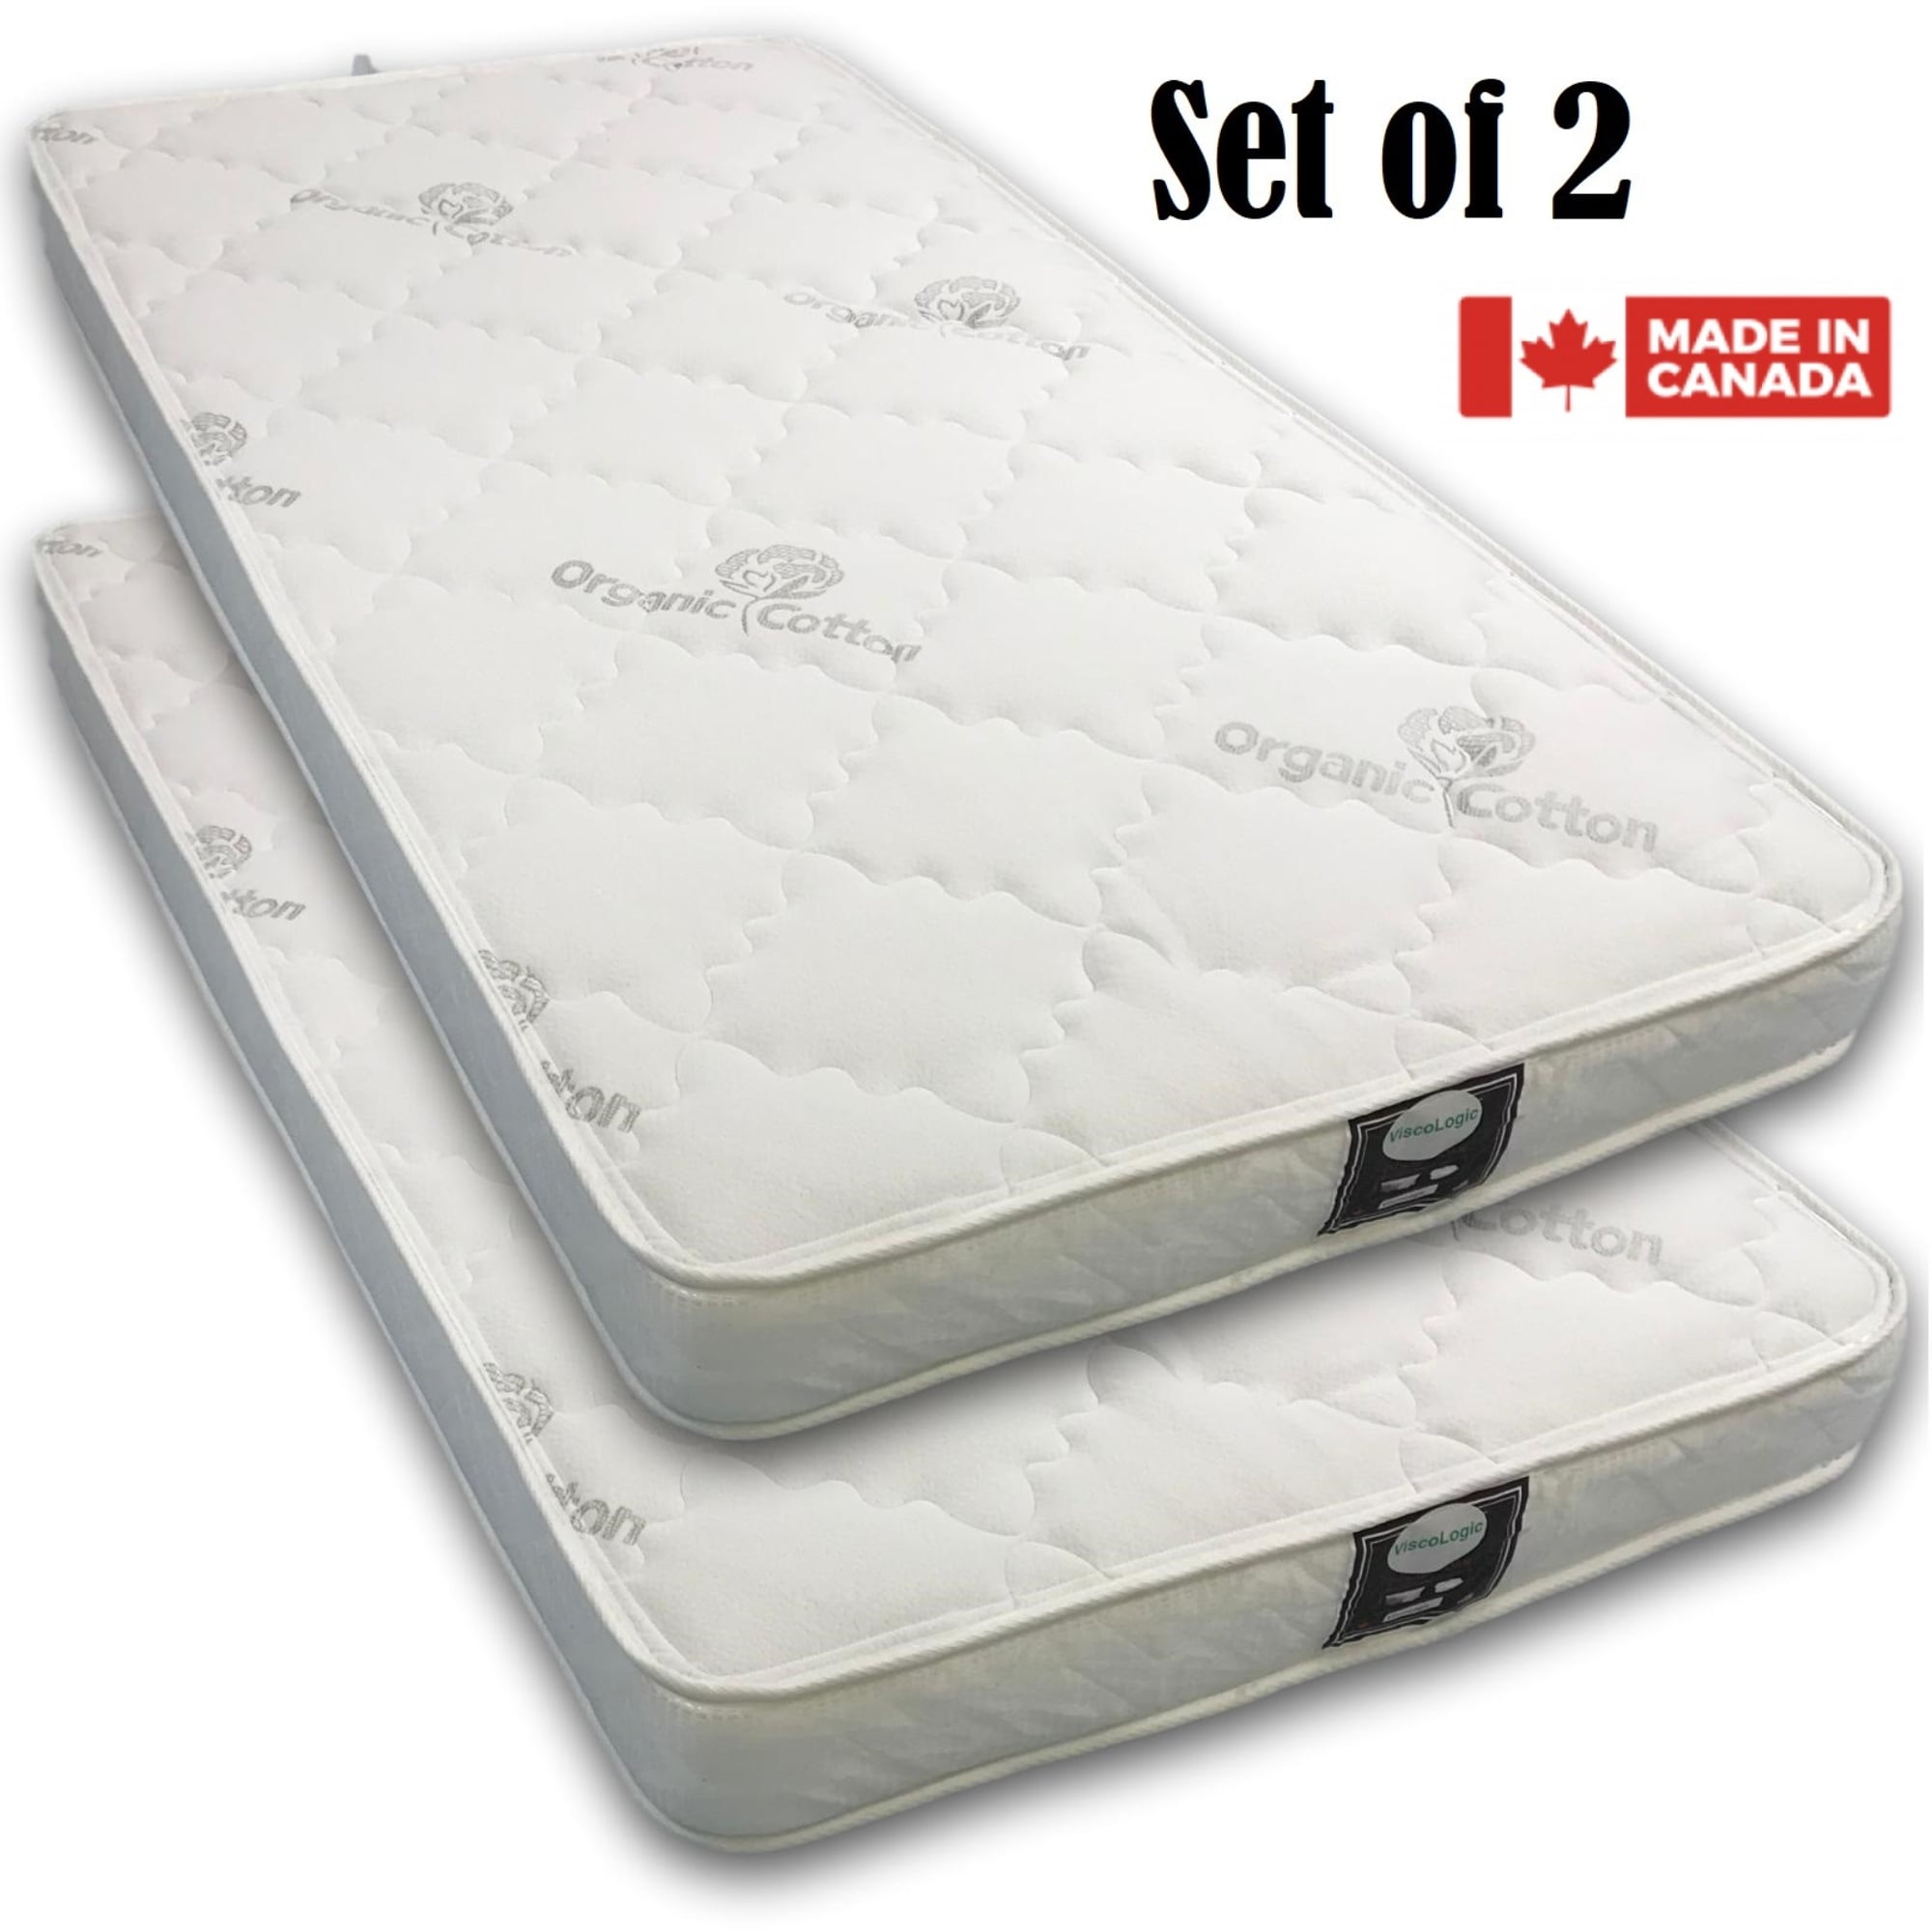 bunk bed mattresses